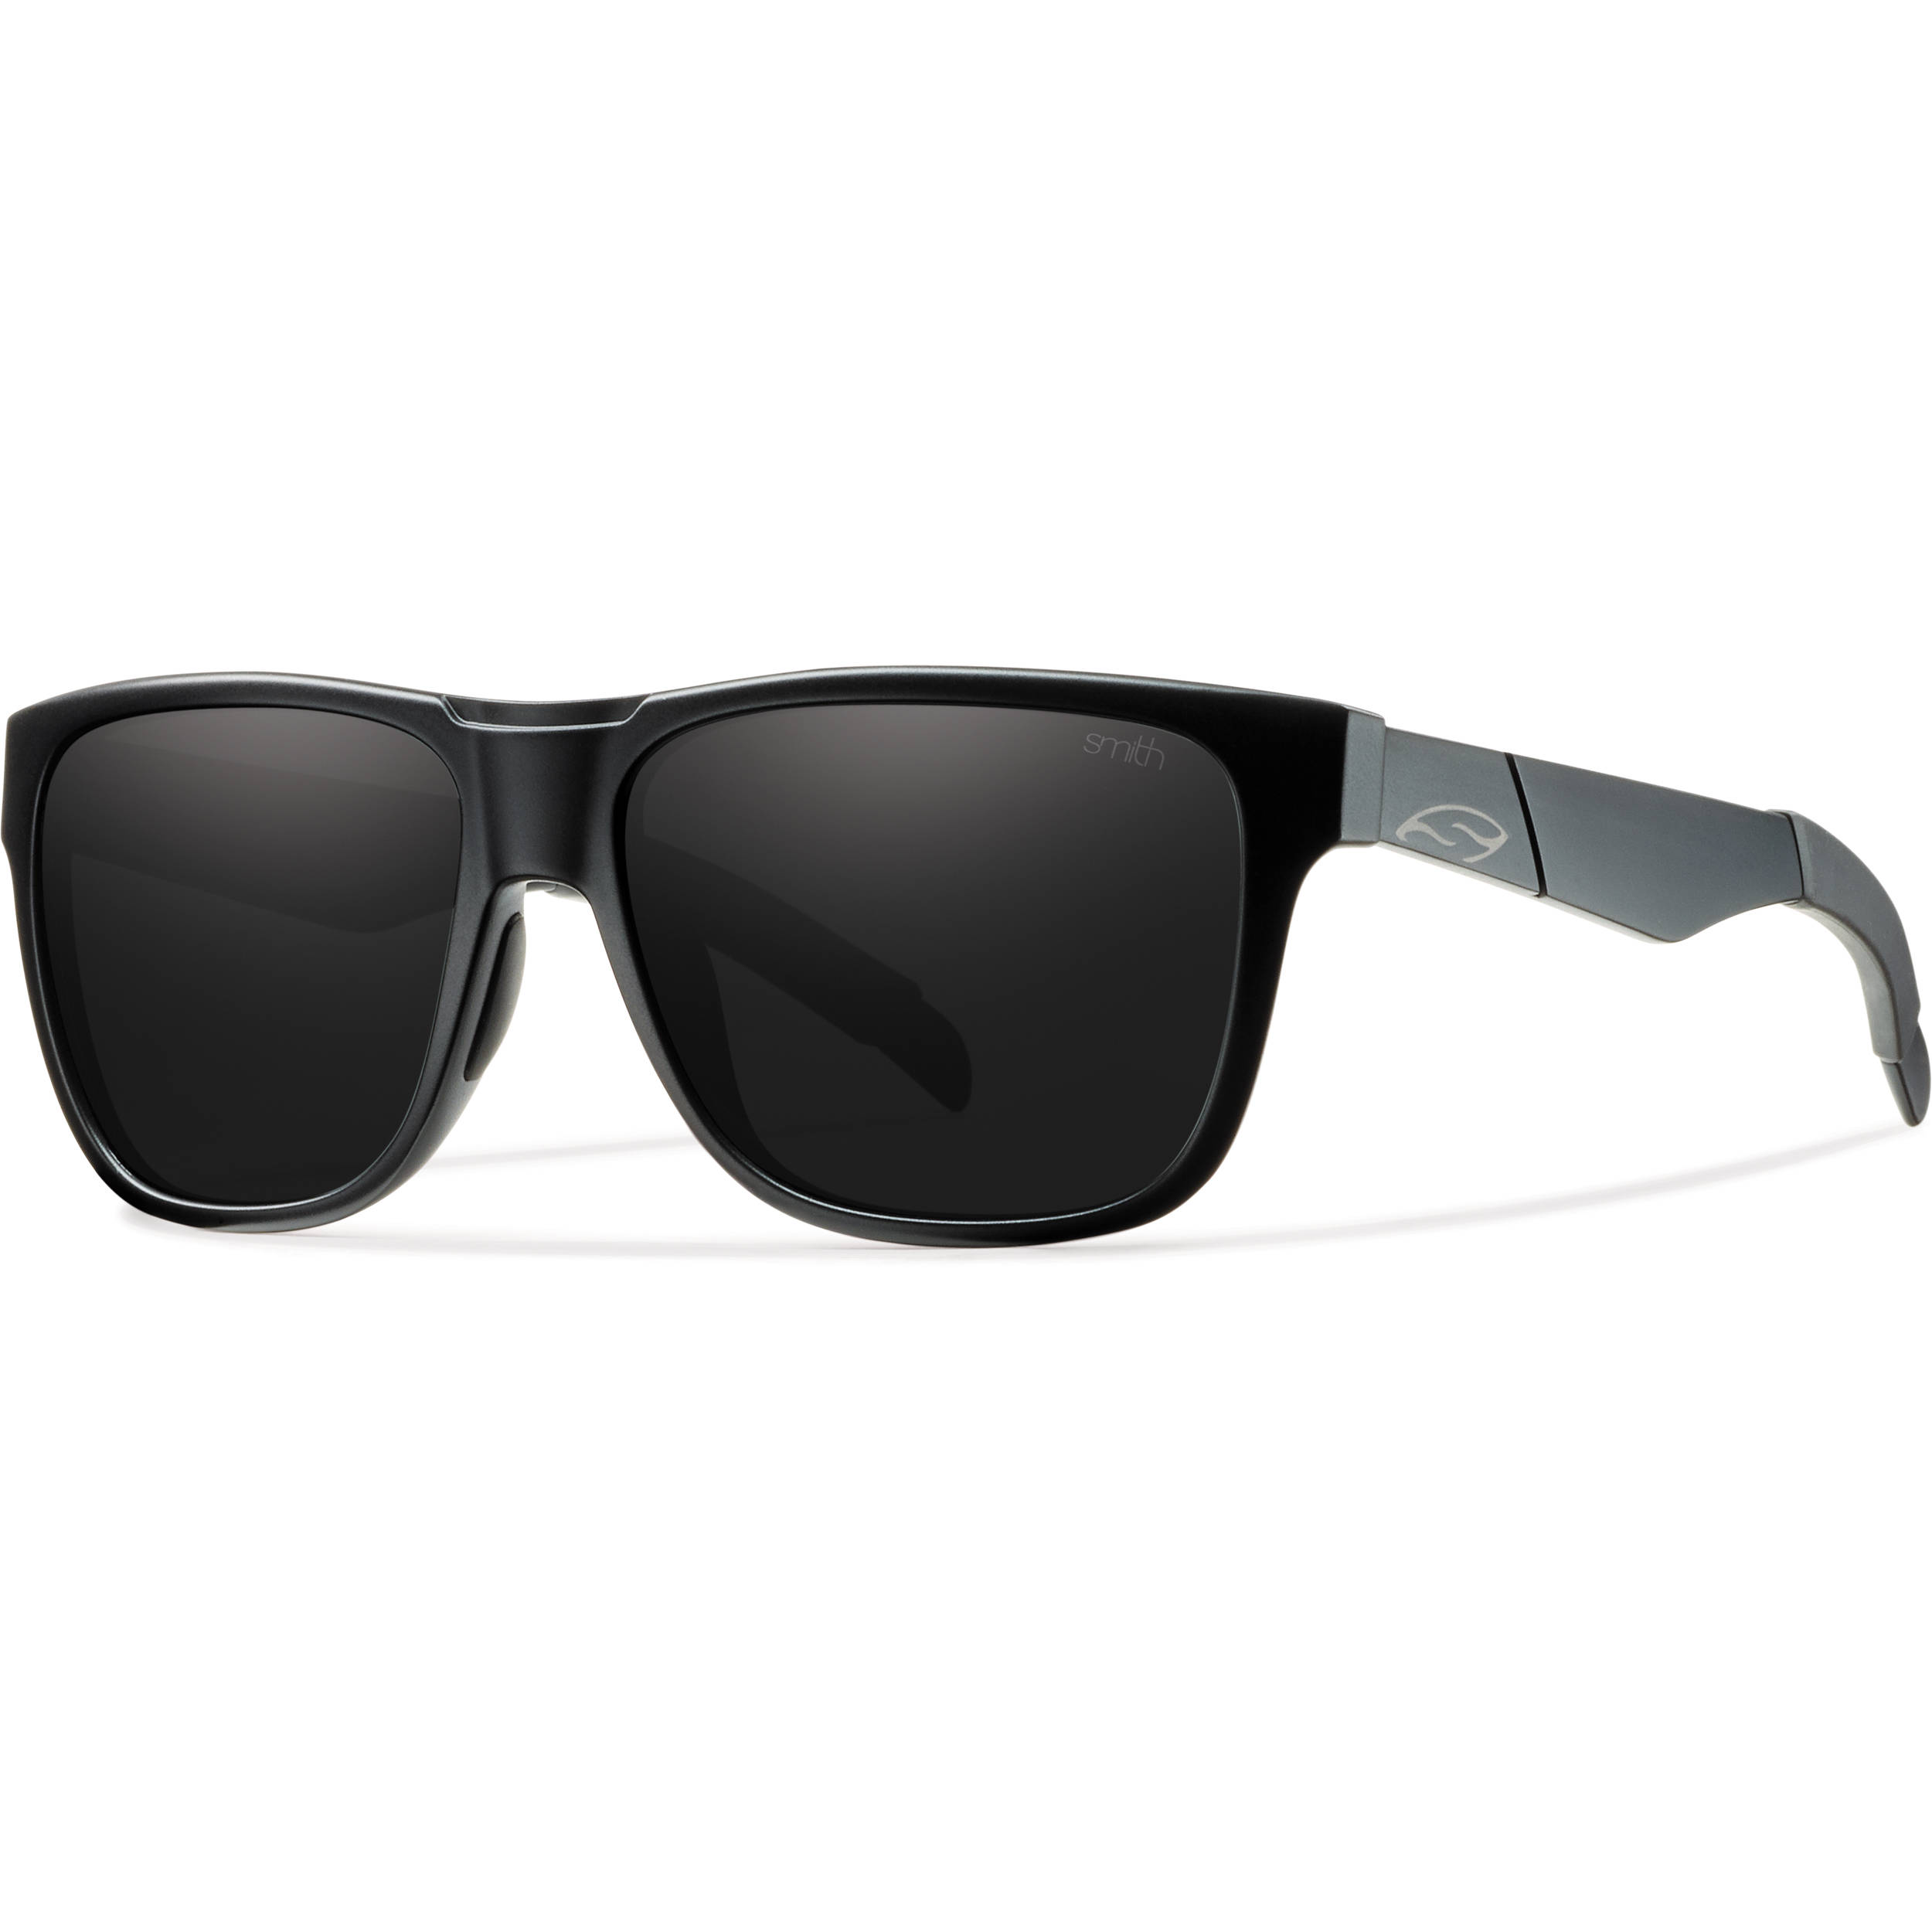 Sunglasses Backgrounds, Compatible - PC, Mobile, Gadgets| 2500x2500 px